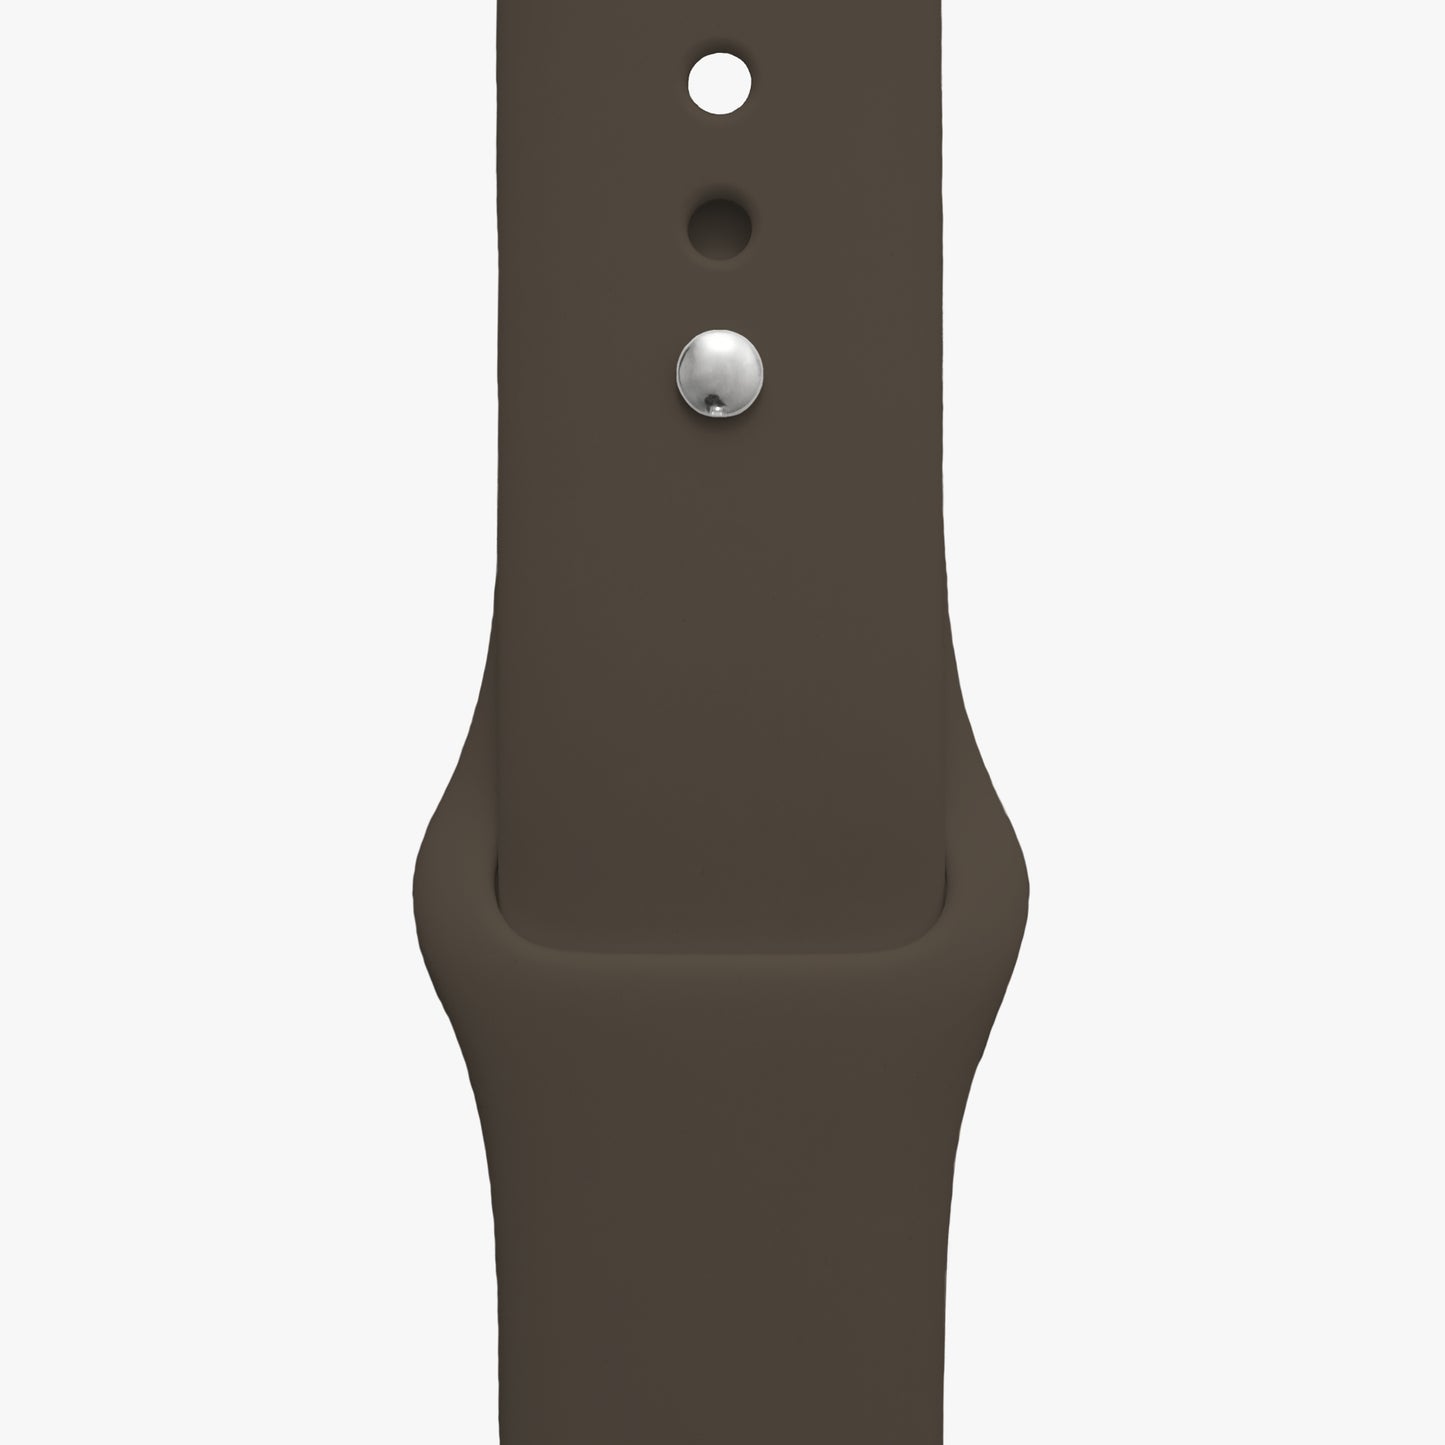 Sportarmband für Apple Watch in graubraun - 2 Größen in Länge S/M + M/L